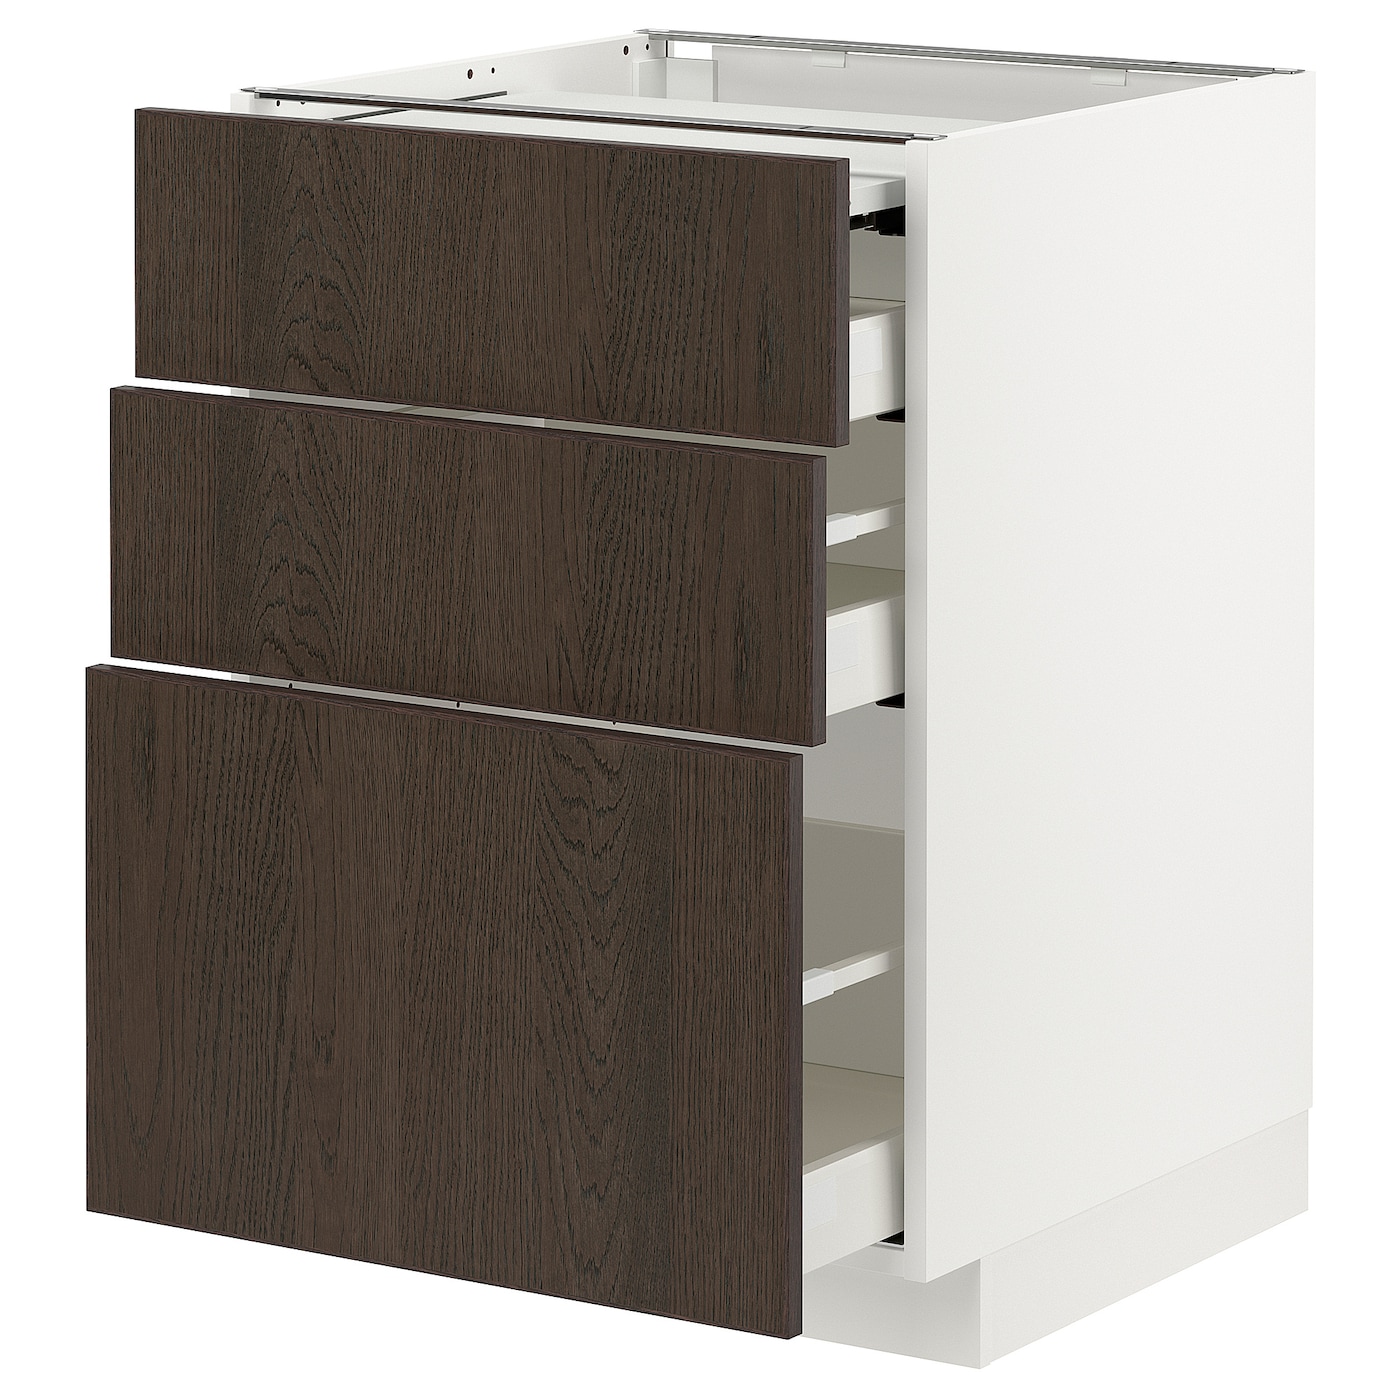 Напольный шкаф - IKEA METOD MAXIMERA, 88x62x60см, белый/темно-коричневый, МЕТОД МАКСИМЕРА ИКЕА